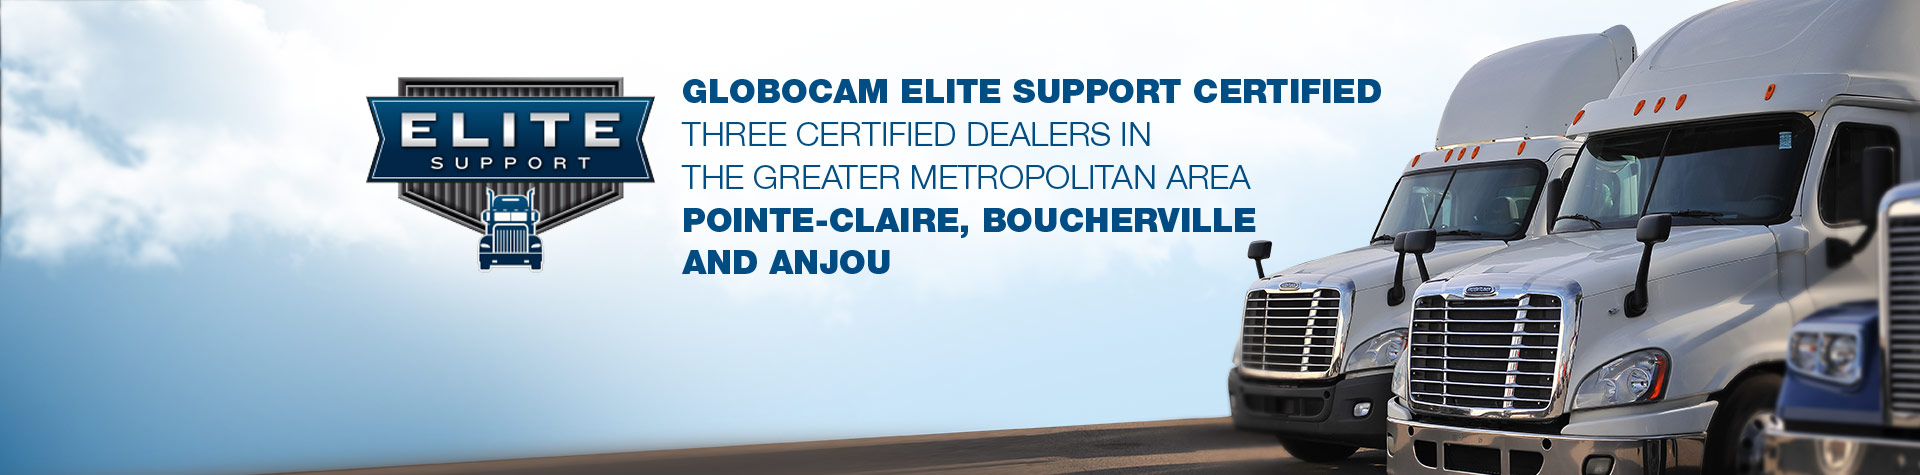 Globocam Elite Support Certified